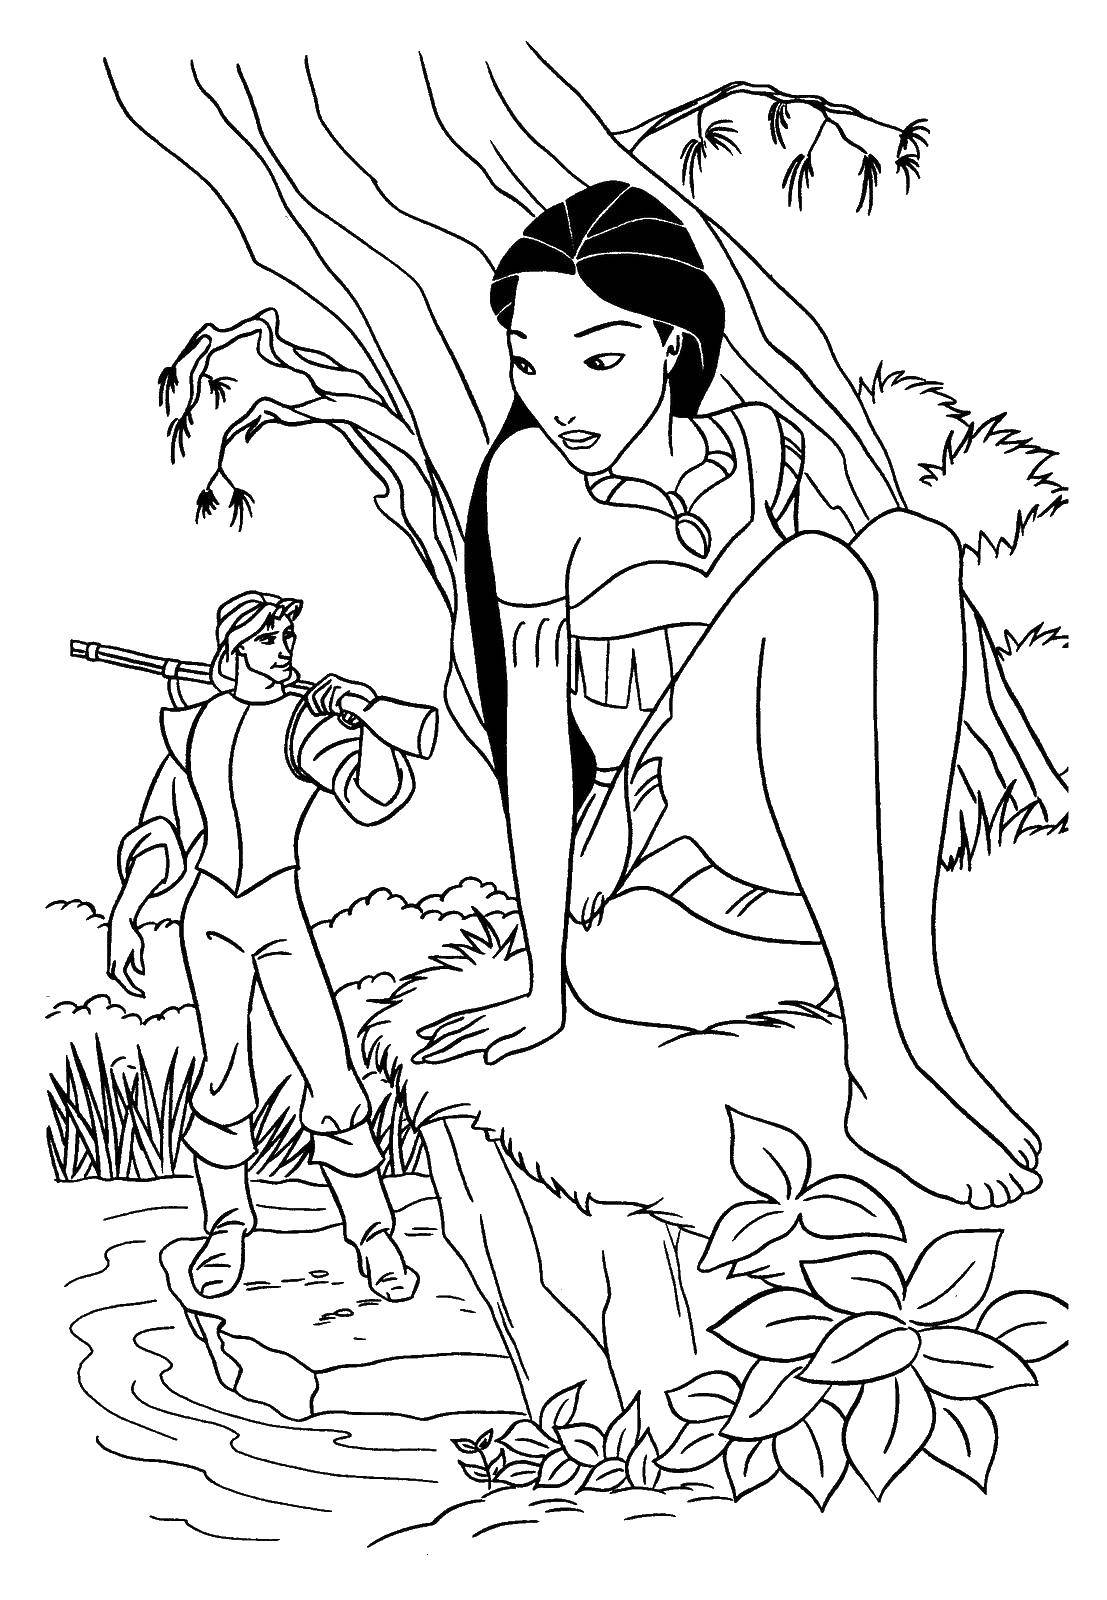 Coloring Mulan. Category Disney coloring pages. Tags:  Disney, Mulan.